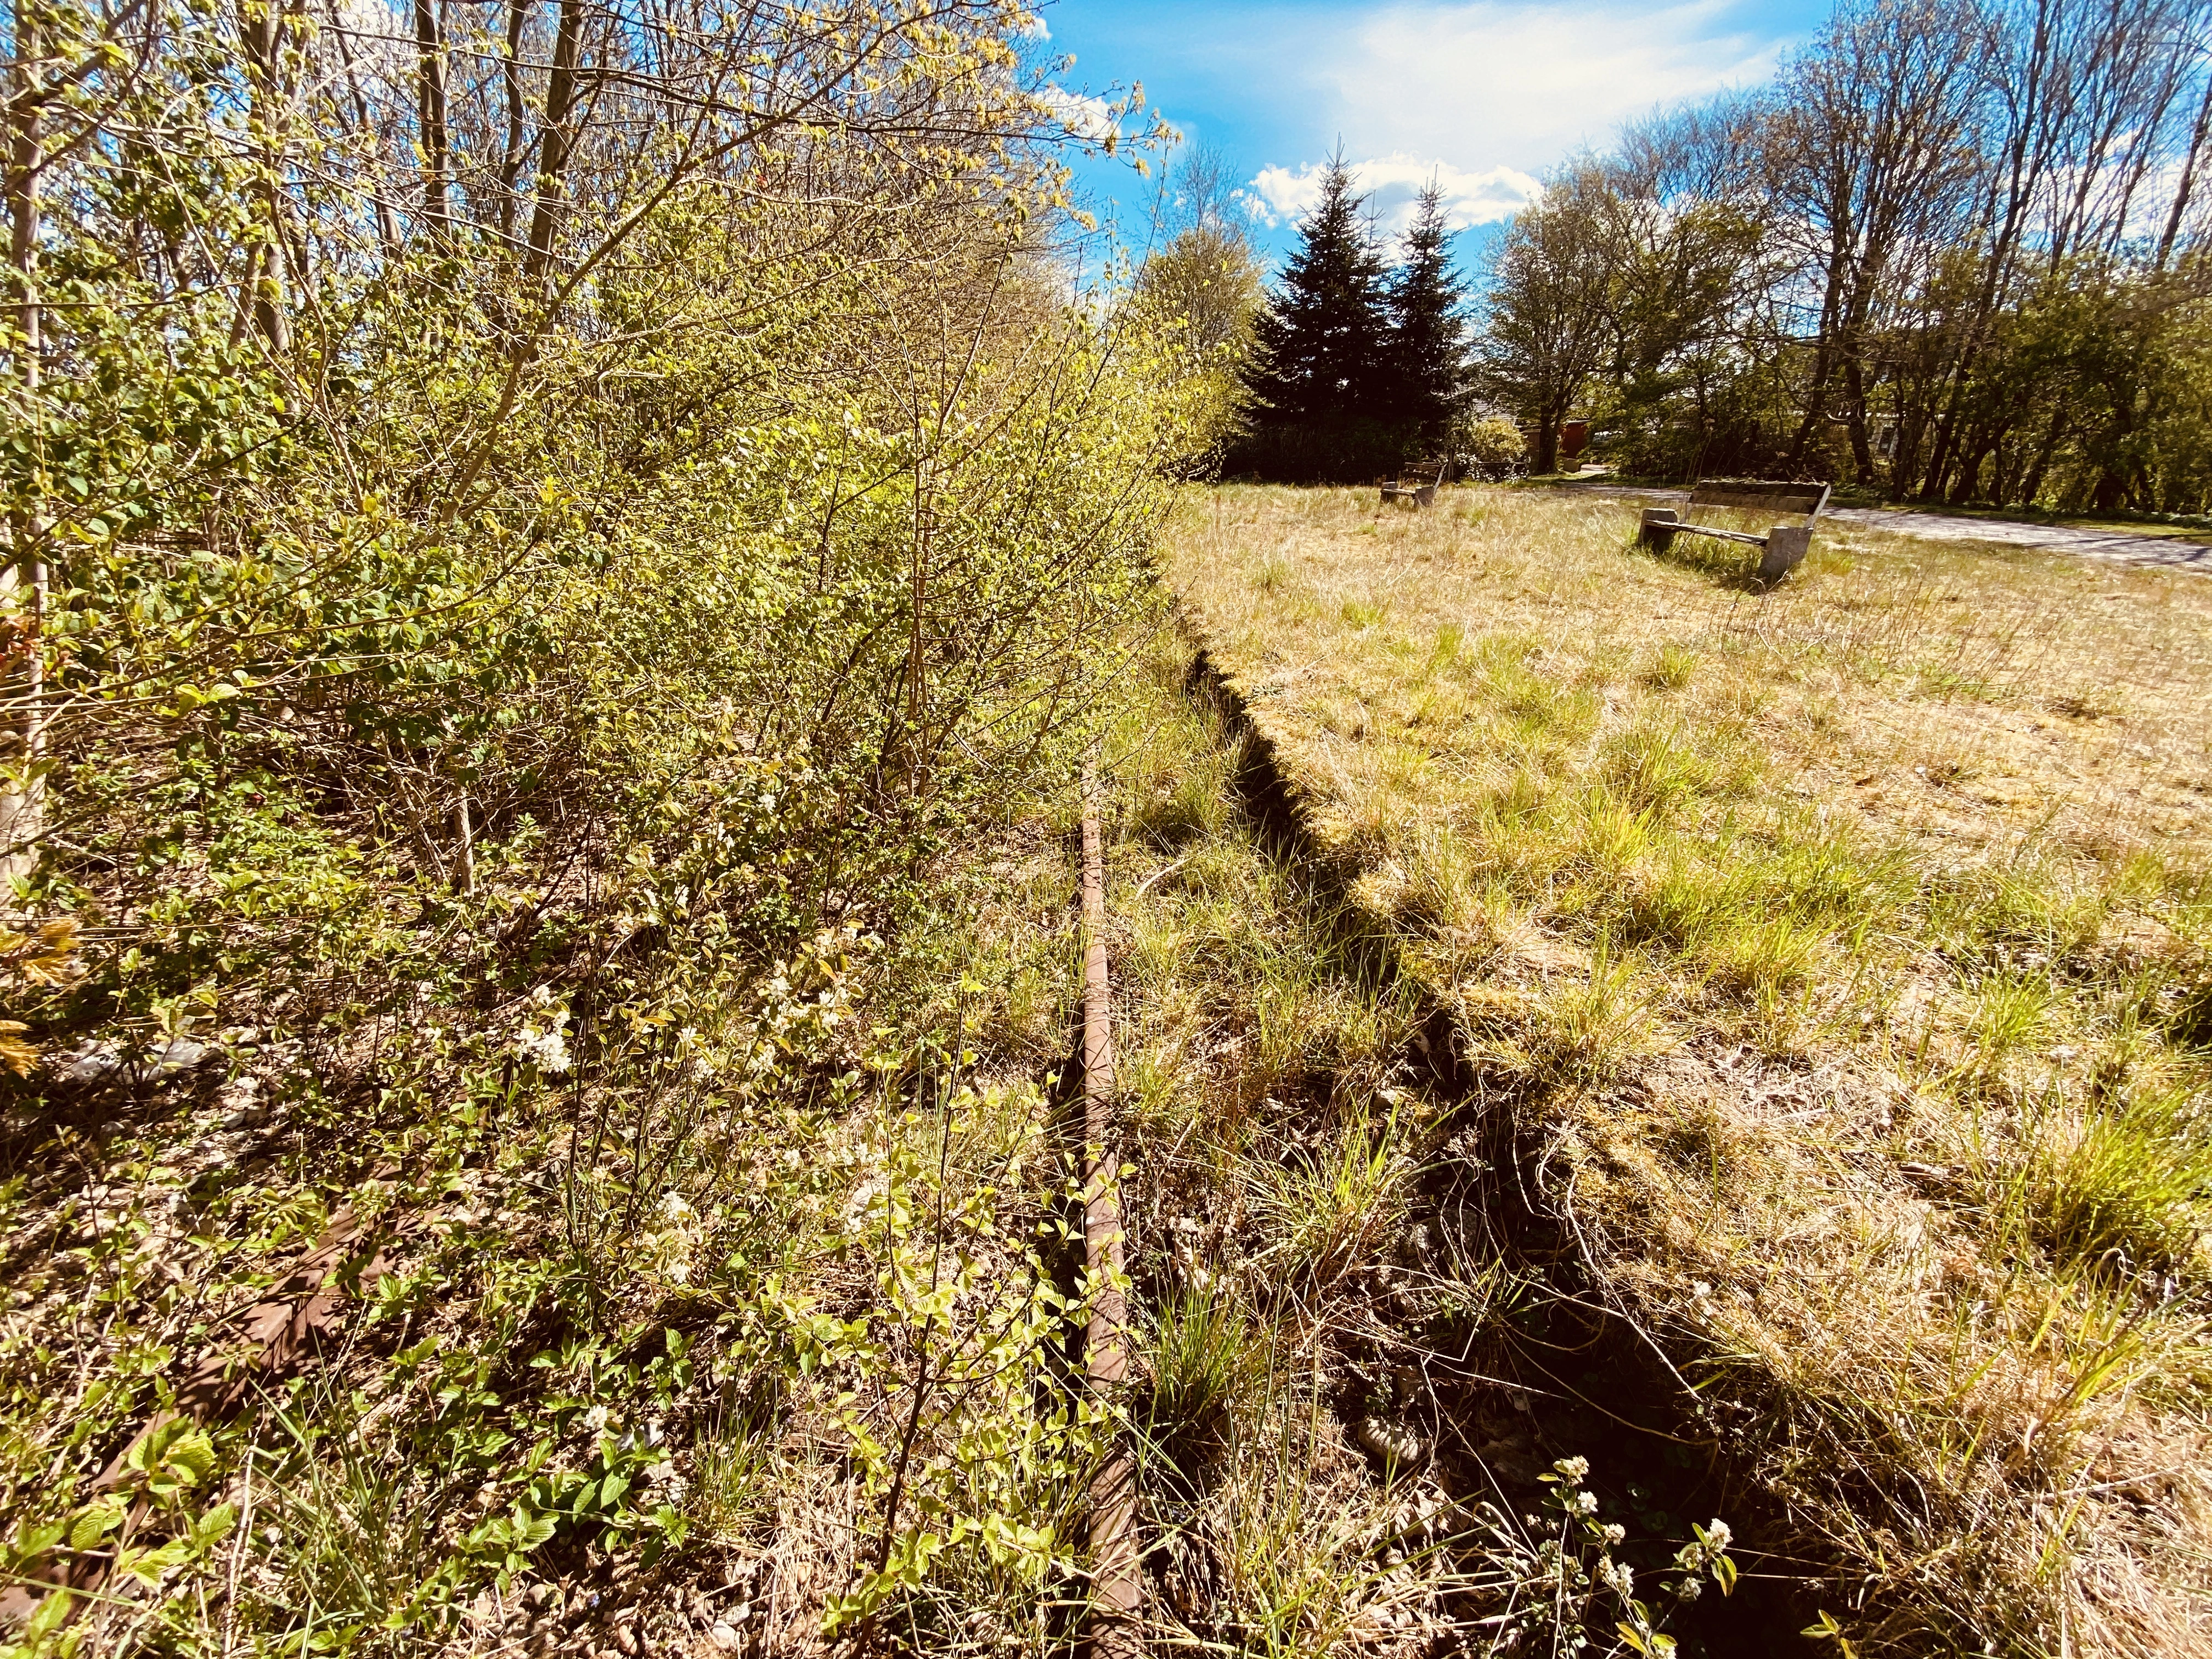 Billede af Jejsing Sidespor - Sidespor er nedrevet, men Jejsing Sidespor har ligget her.